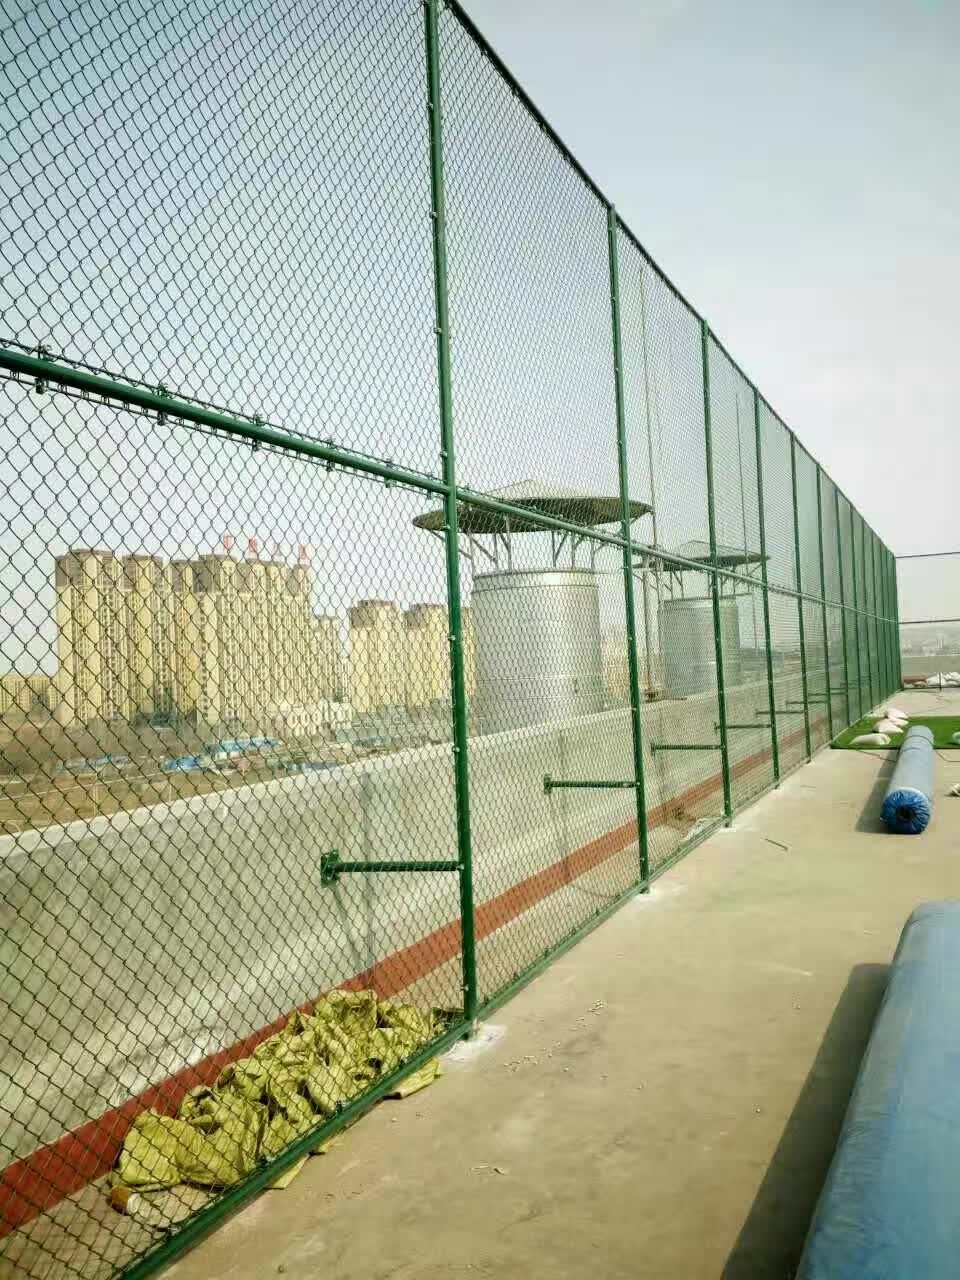 济南运动场围网施工 篮球场围网 足球场围网尺寸定做电话